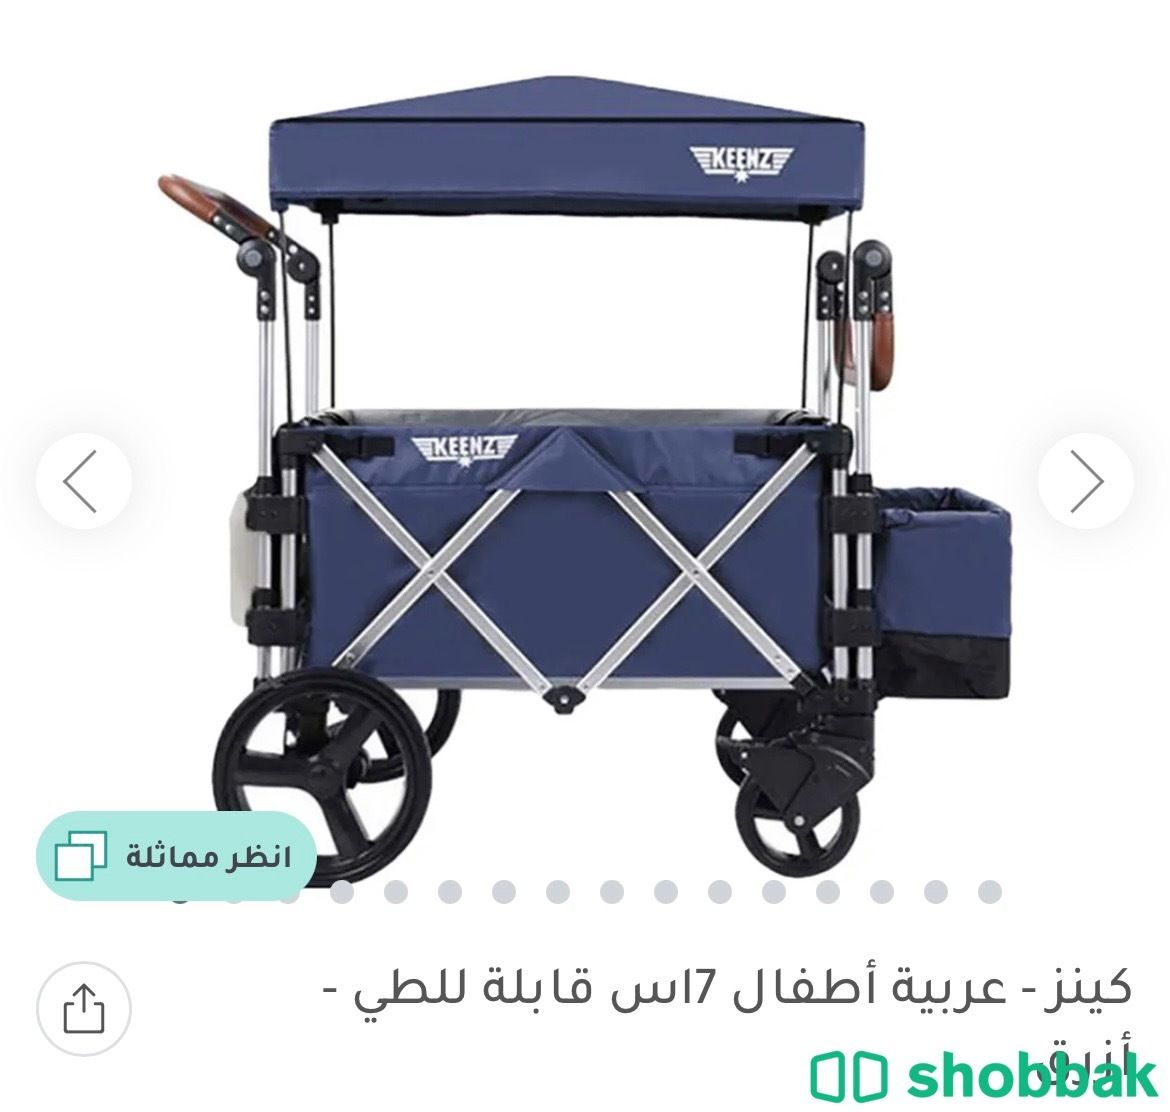 عربة أطفال مناسبة لأكثر من طفل، أمريكية أصلية نادرة Shobbak Saudi Arabia